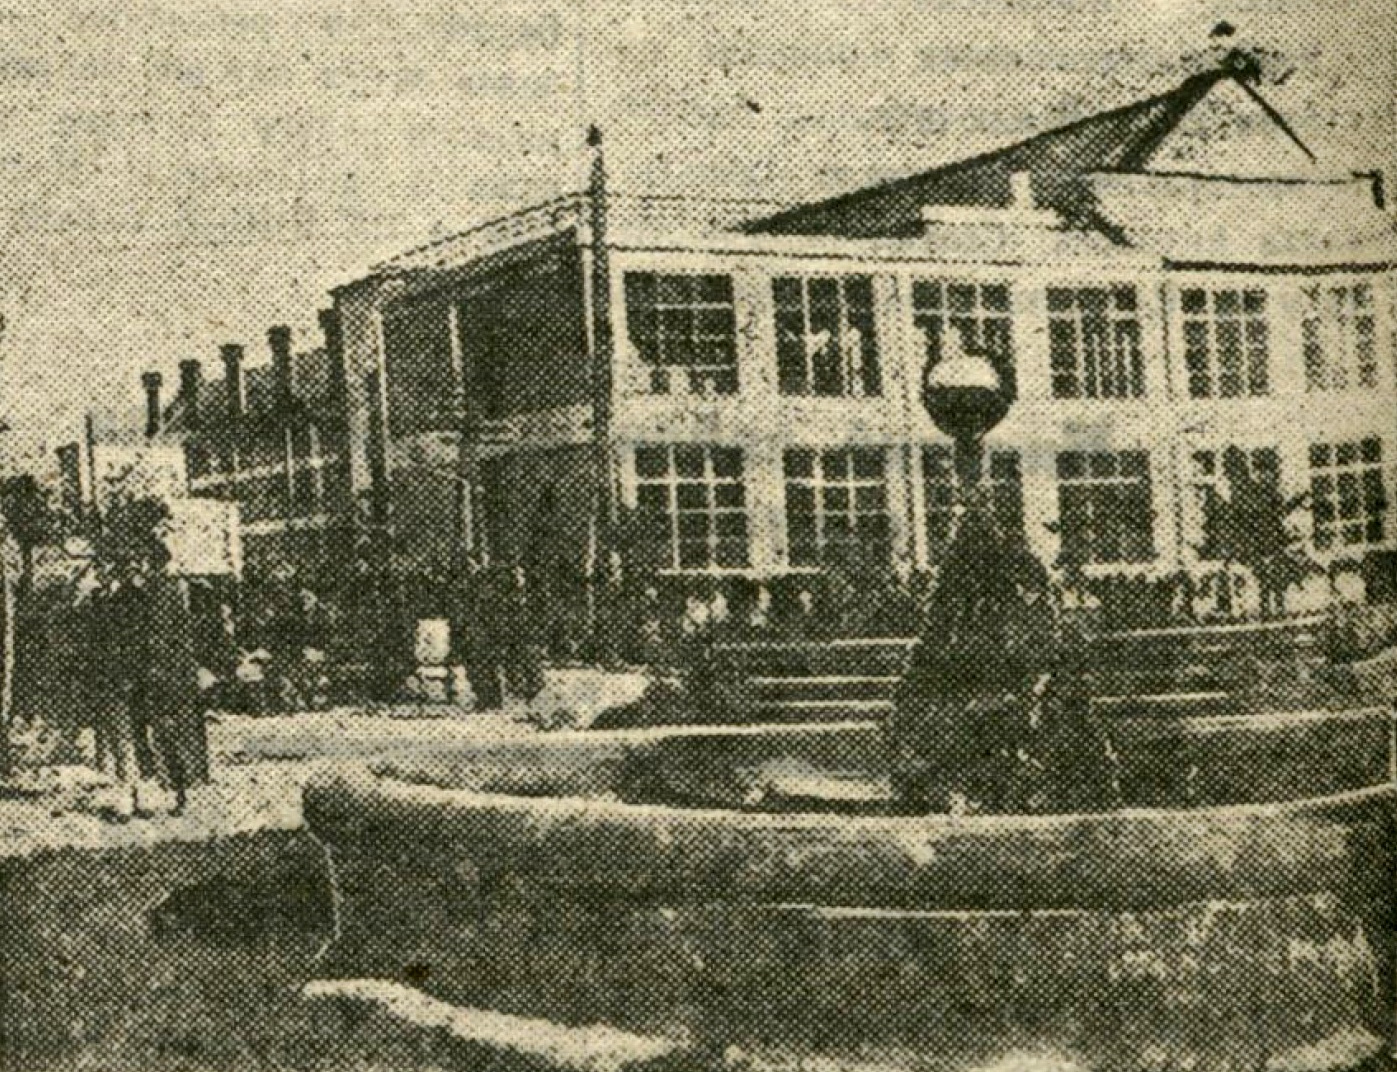 Фонтан на фабрике Знамя индустриализации. Рабочий, 20 октября 1935 года